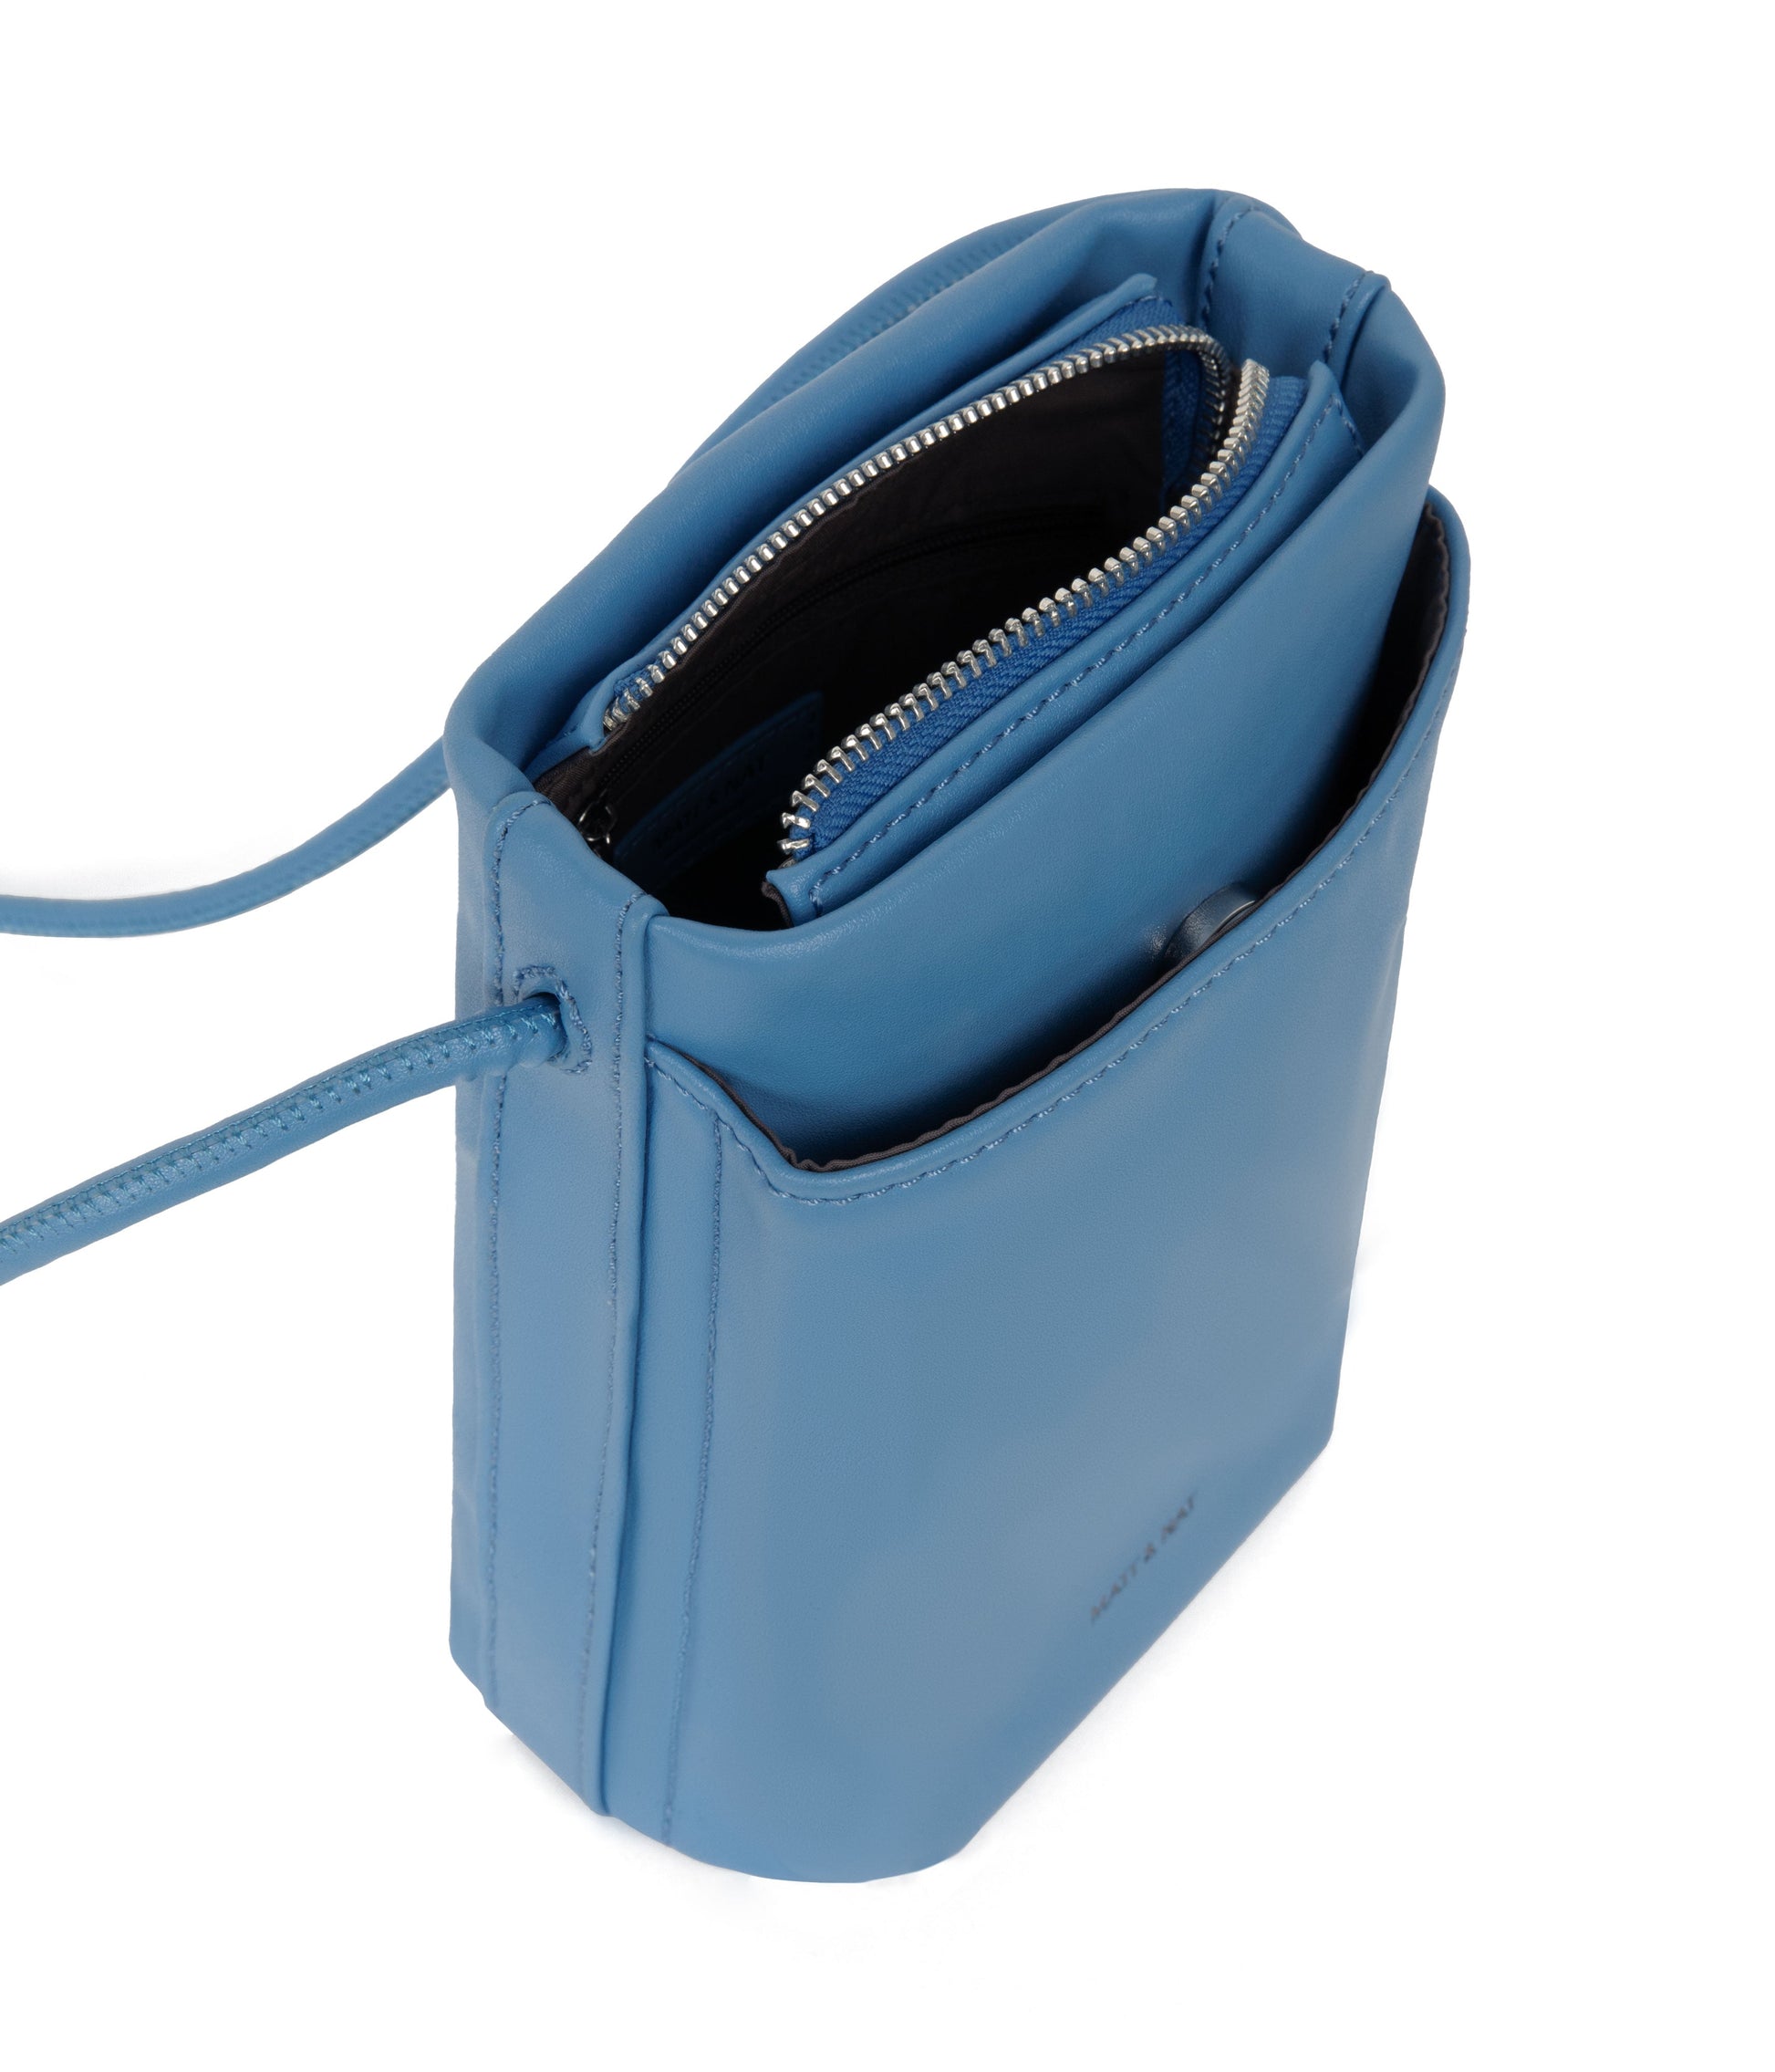 MILLE Vegan Crossbody Bag - Sol | Color: Blue - variant::resort